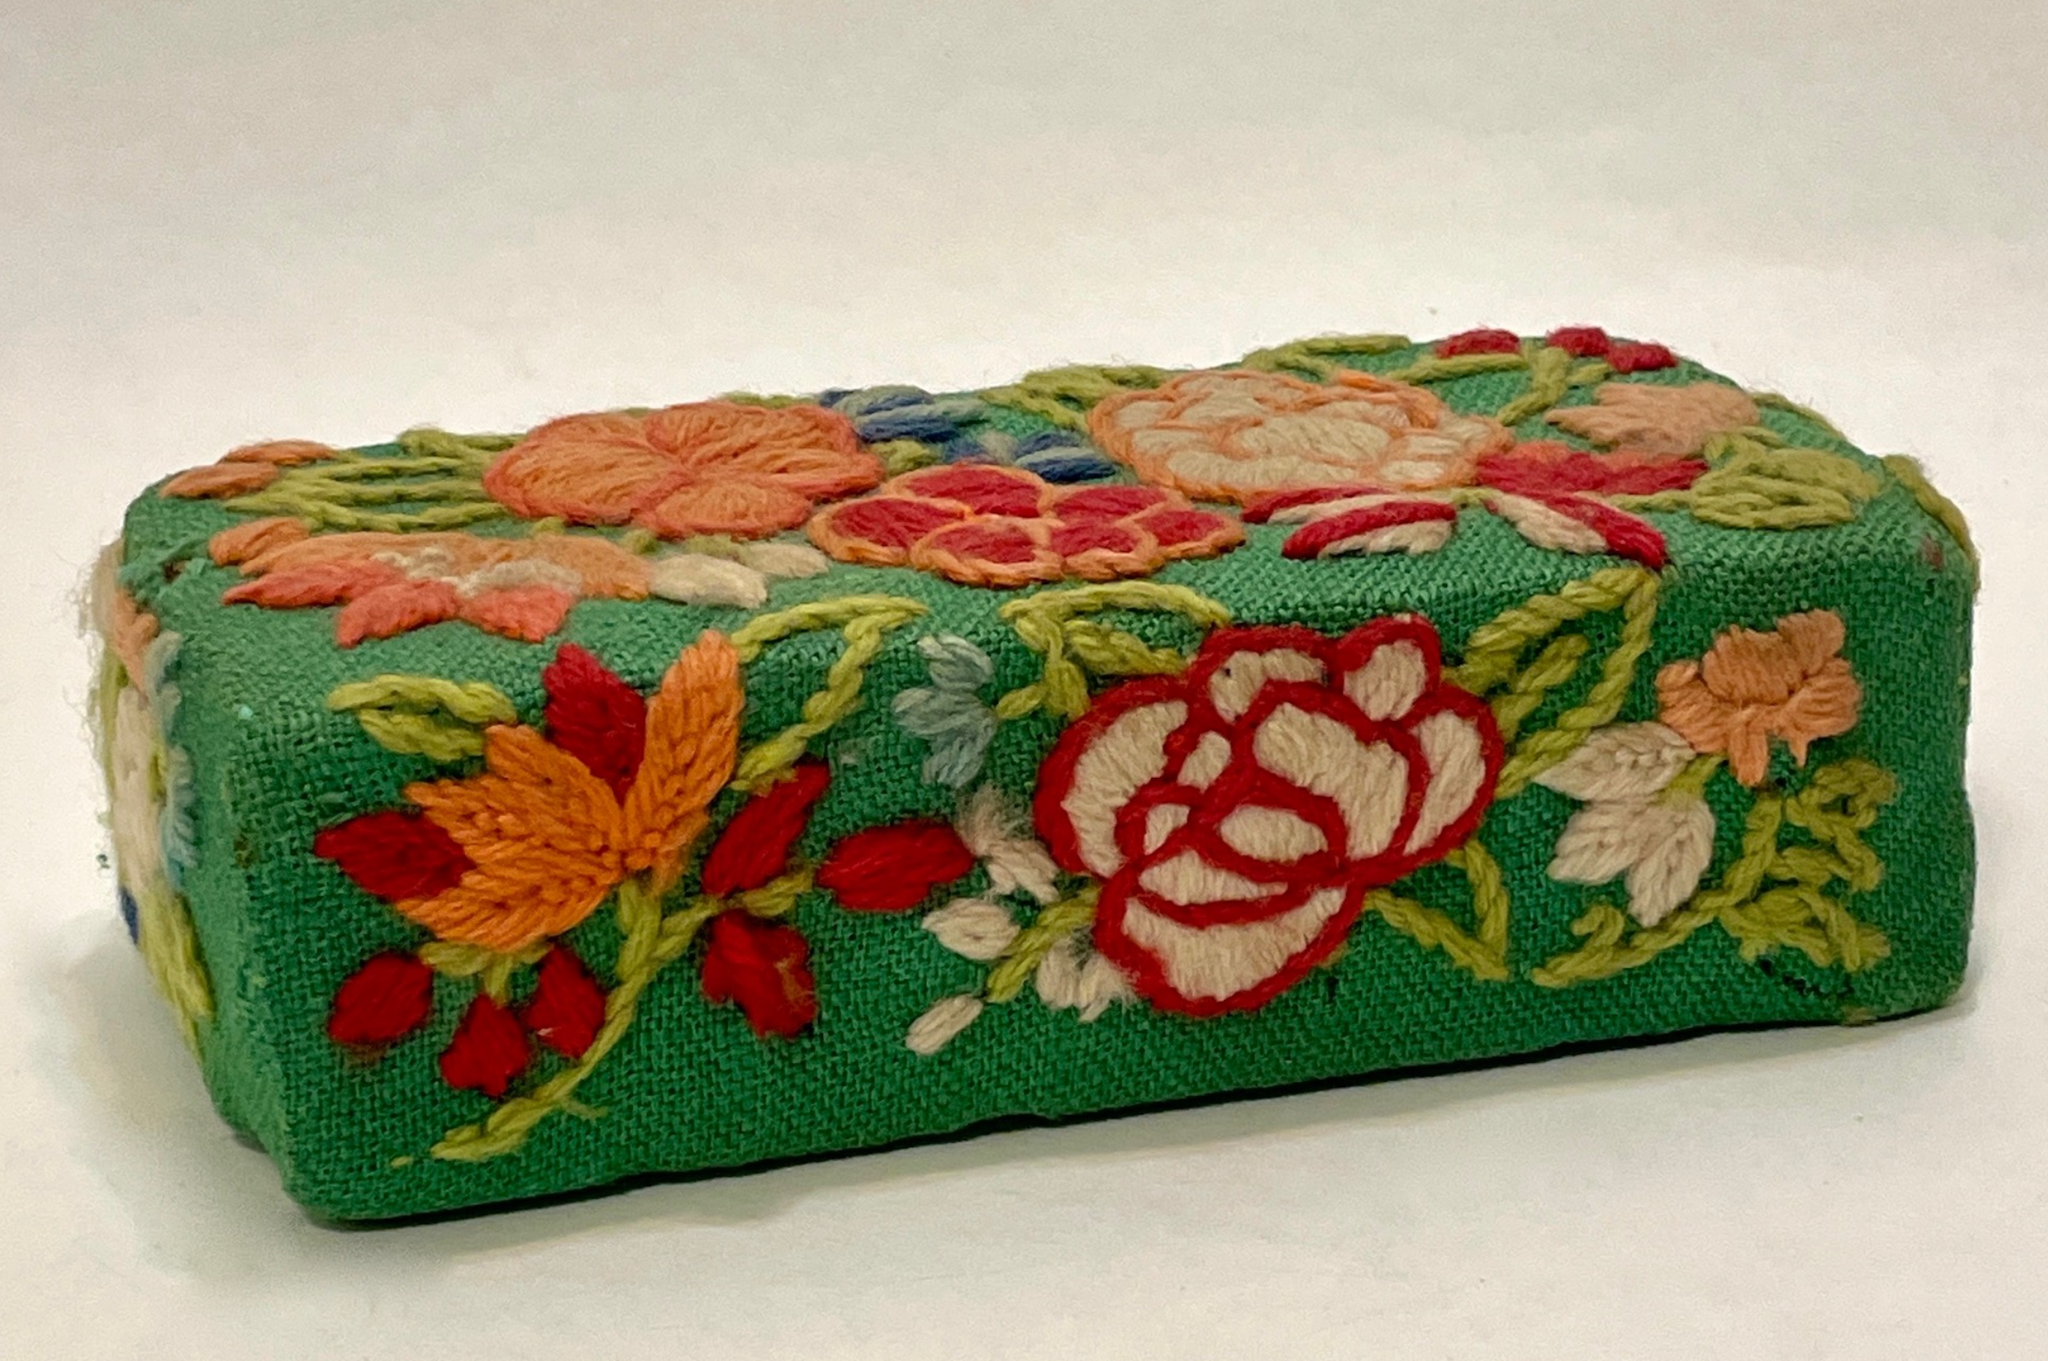 Flower Brick - Brick encased in crewel embroidery